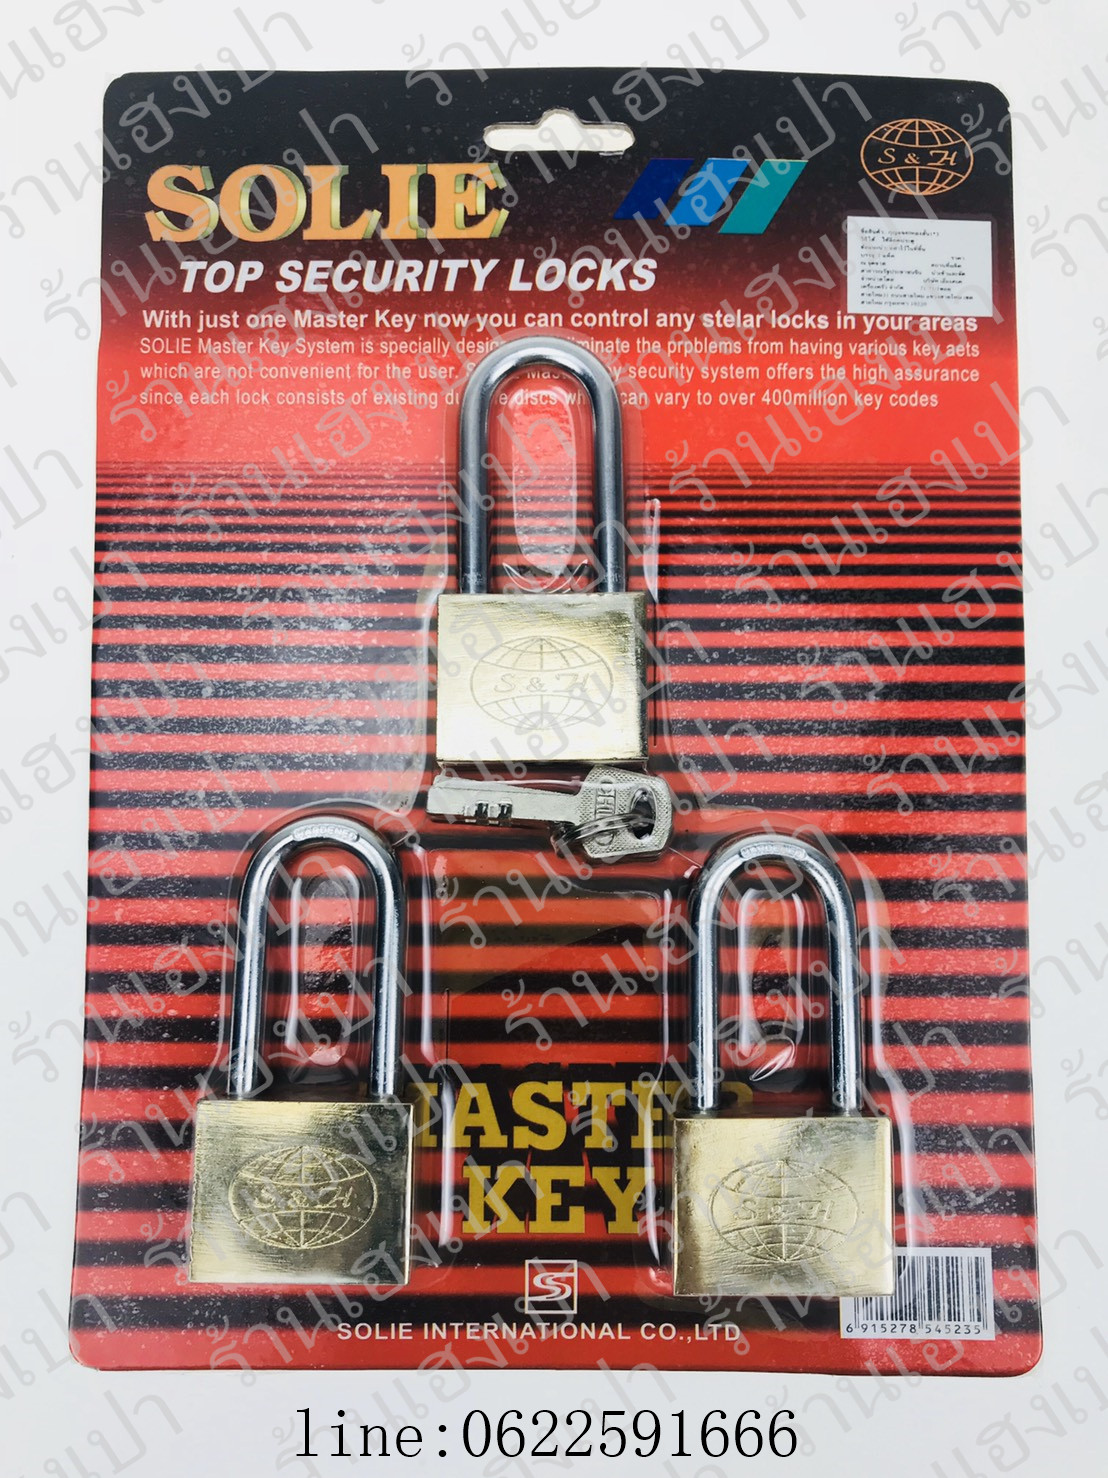 แม่กุญแจล็อคประตูพร้อมลูกกุญแจ SOLIE กุญแจล็อคหน้าบ้าน กุญแจล็อค NO.438MKK   ร้านเฮงเปา